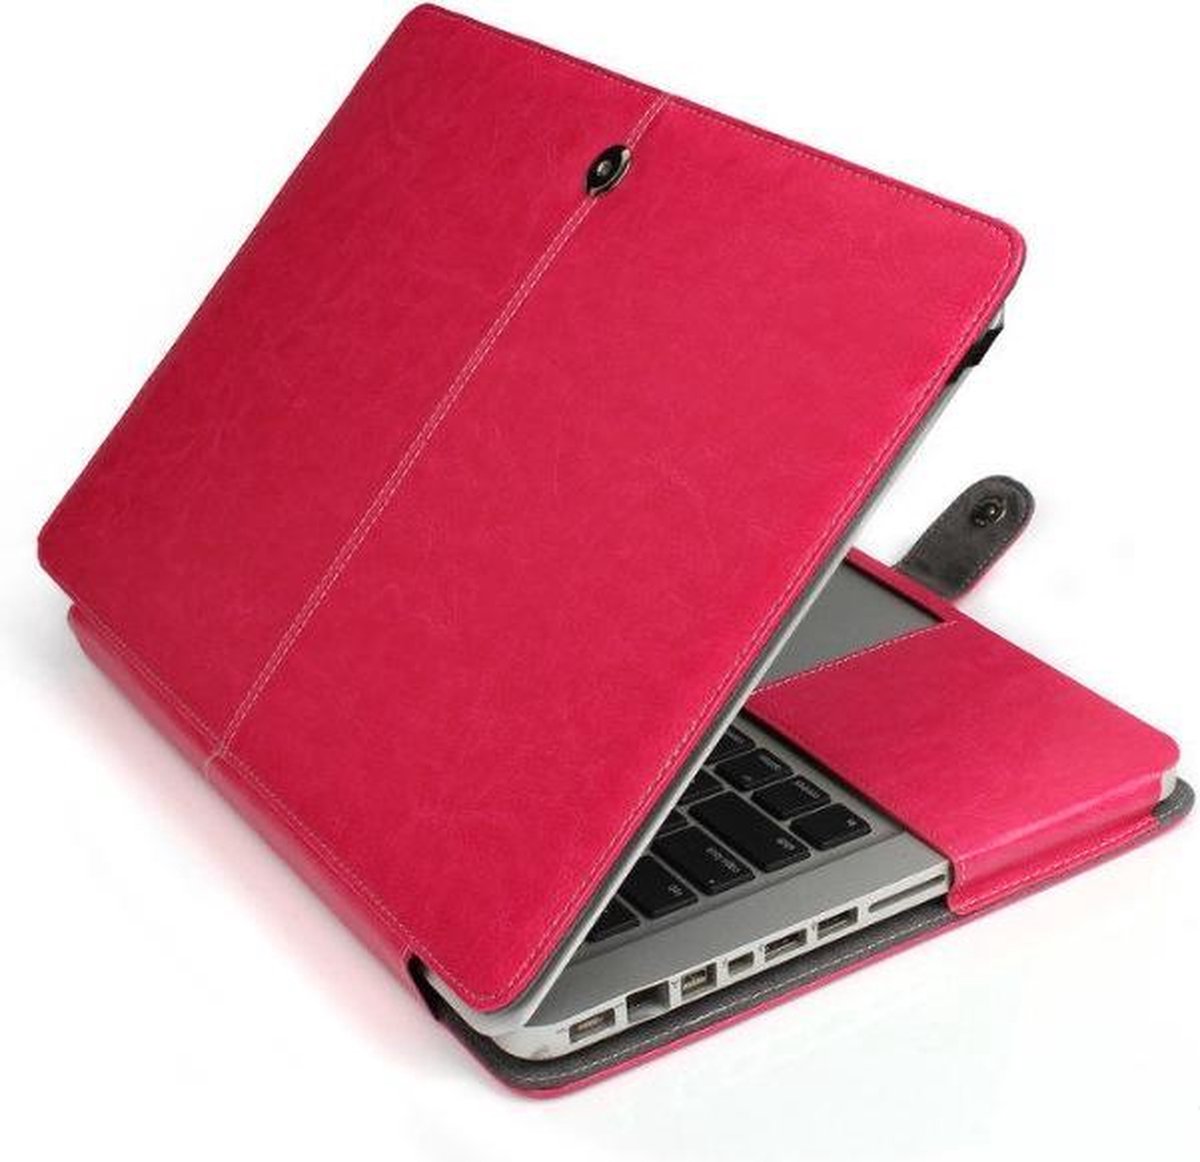 Laptophoes Voor MacBook Pro zonder retina 13 inch 2011 / 2012 - Laptoptas - met sluiting - Pink